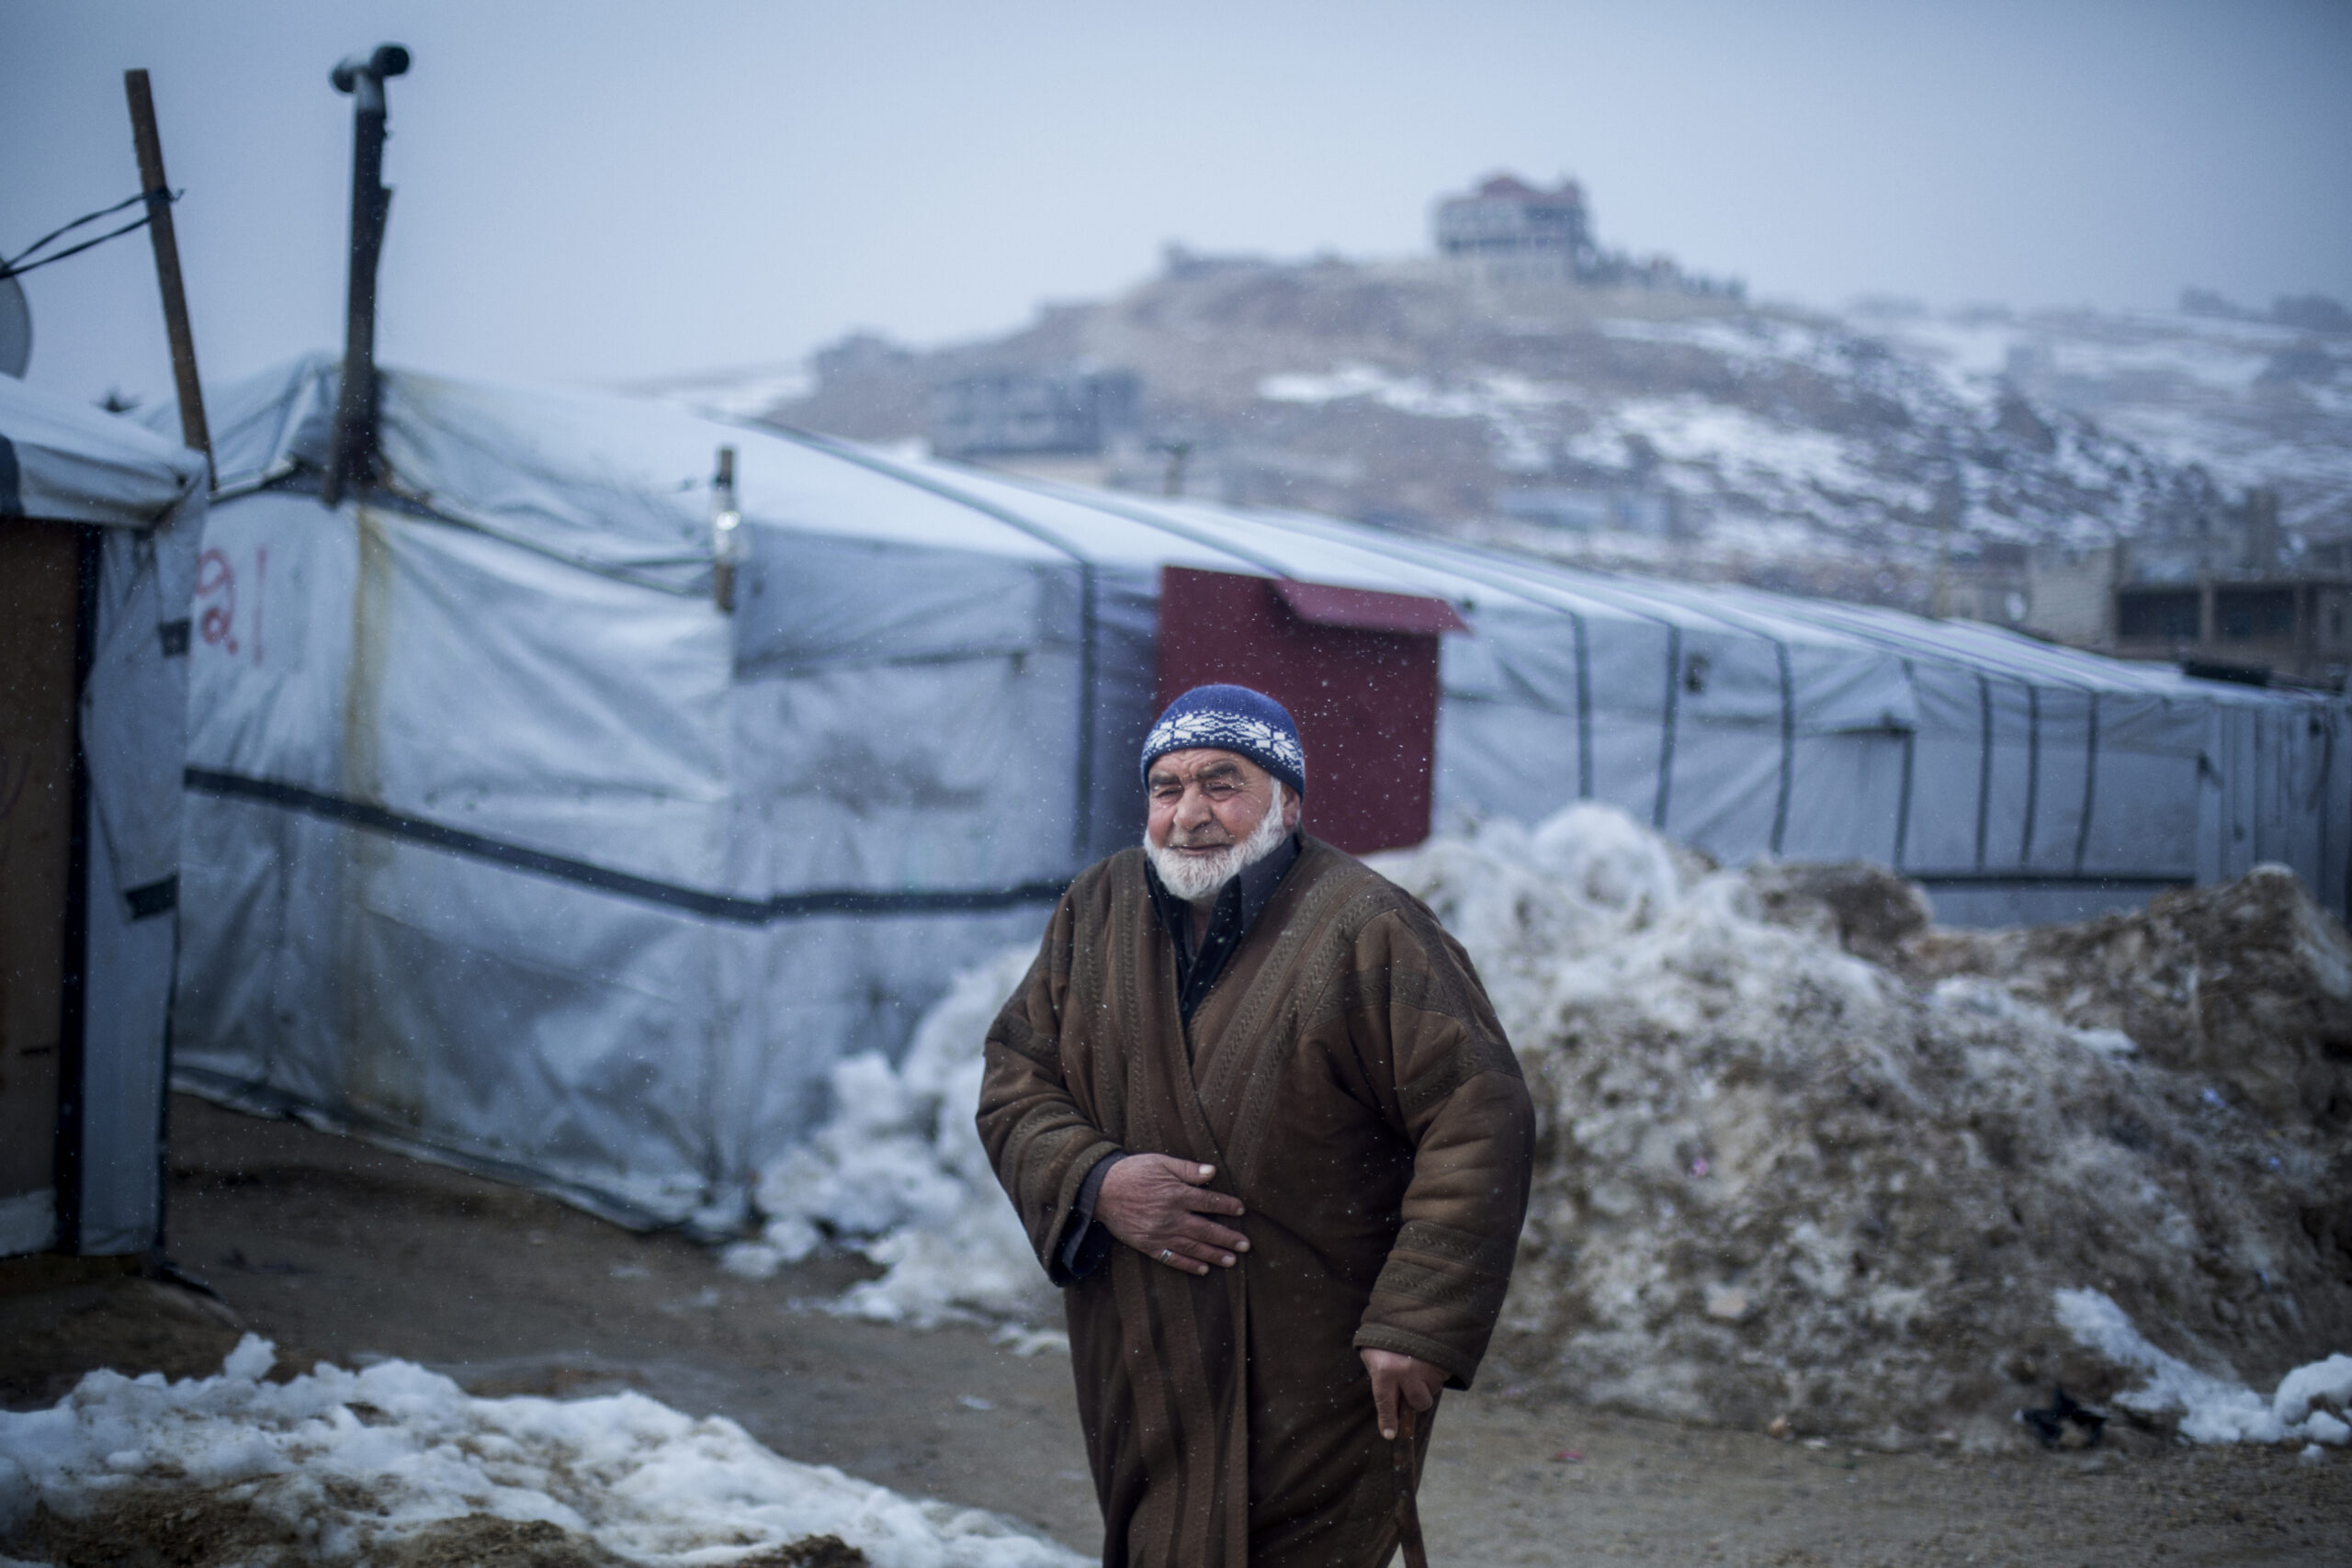 Les années de fuite dessinent le visage de cet homme âgé. Ainsi que le froid glacial pendant l’hiver. Il a fui la Syrie et vit maintenant à Arsal, au Liban. Pour maintenir sa condition, il se promène régulièrement dans le camp d’accueil. © UNHCR/ Diego Ibarra Sánchez